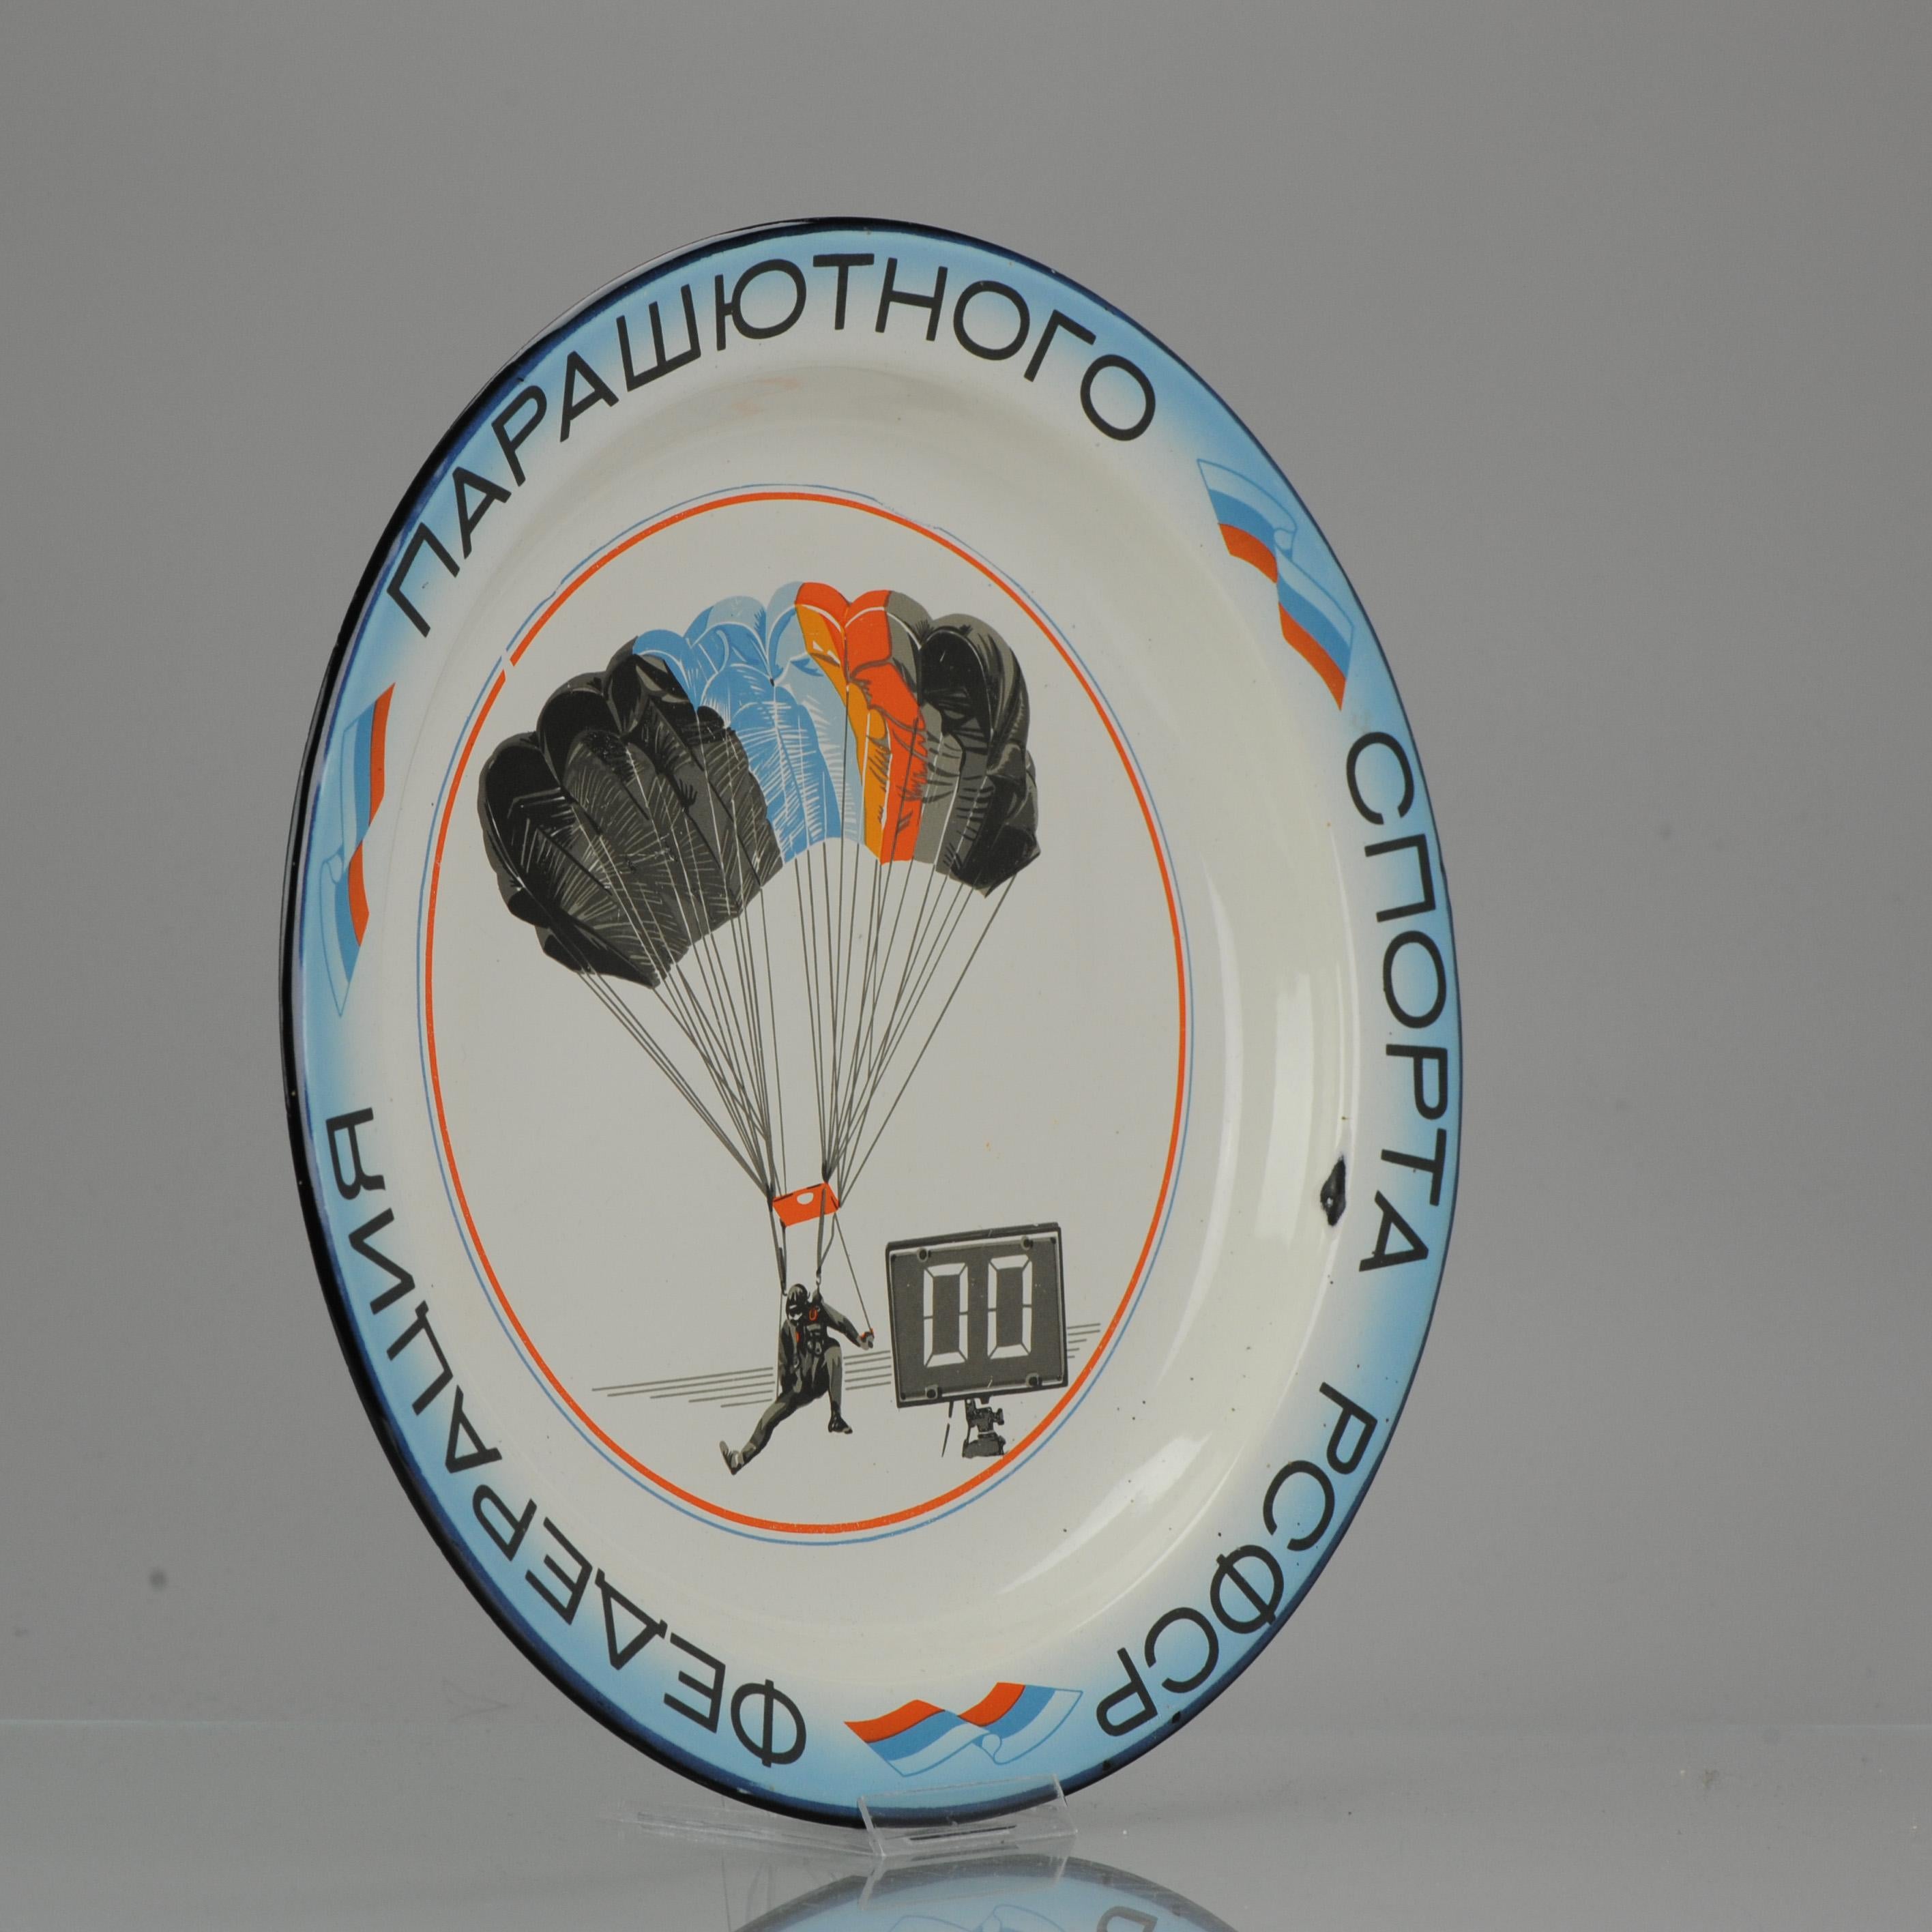 Emaillierter Vintage-Teller, 1991

Oben auf der Platte ist das Bild eines Fallschirmspringers abgebildet, und eine Art Uhr oder Zähler. Rundherum sind russische Schriftzeichen und russische Flaggen zu sehen. Es handelt sich um einen Gedenkteller für